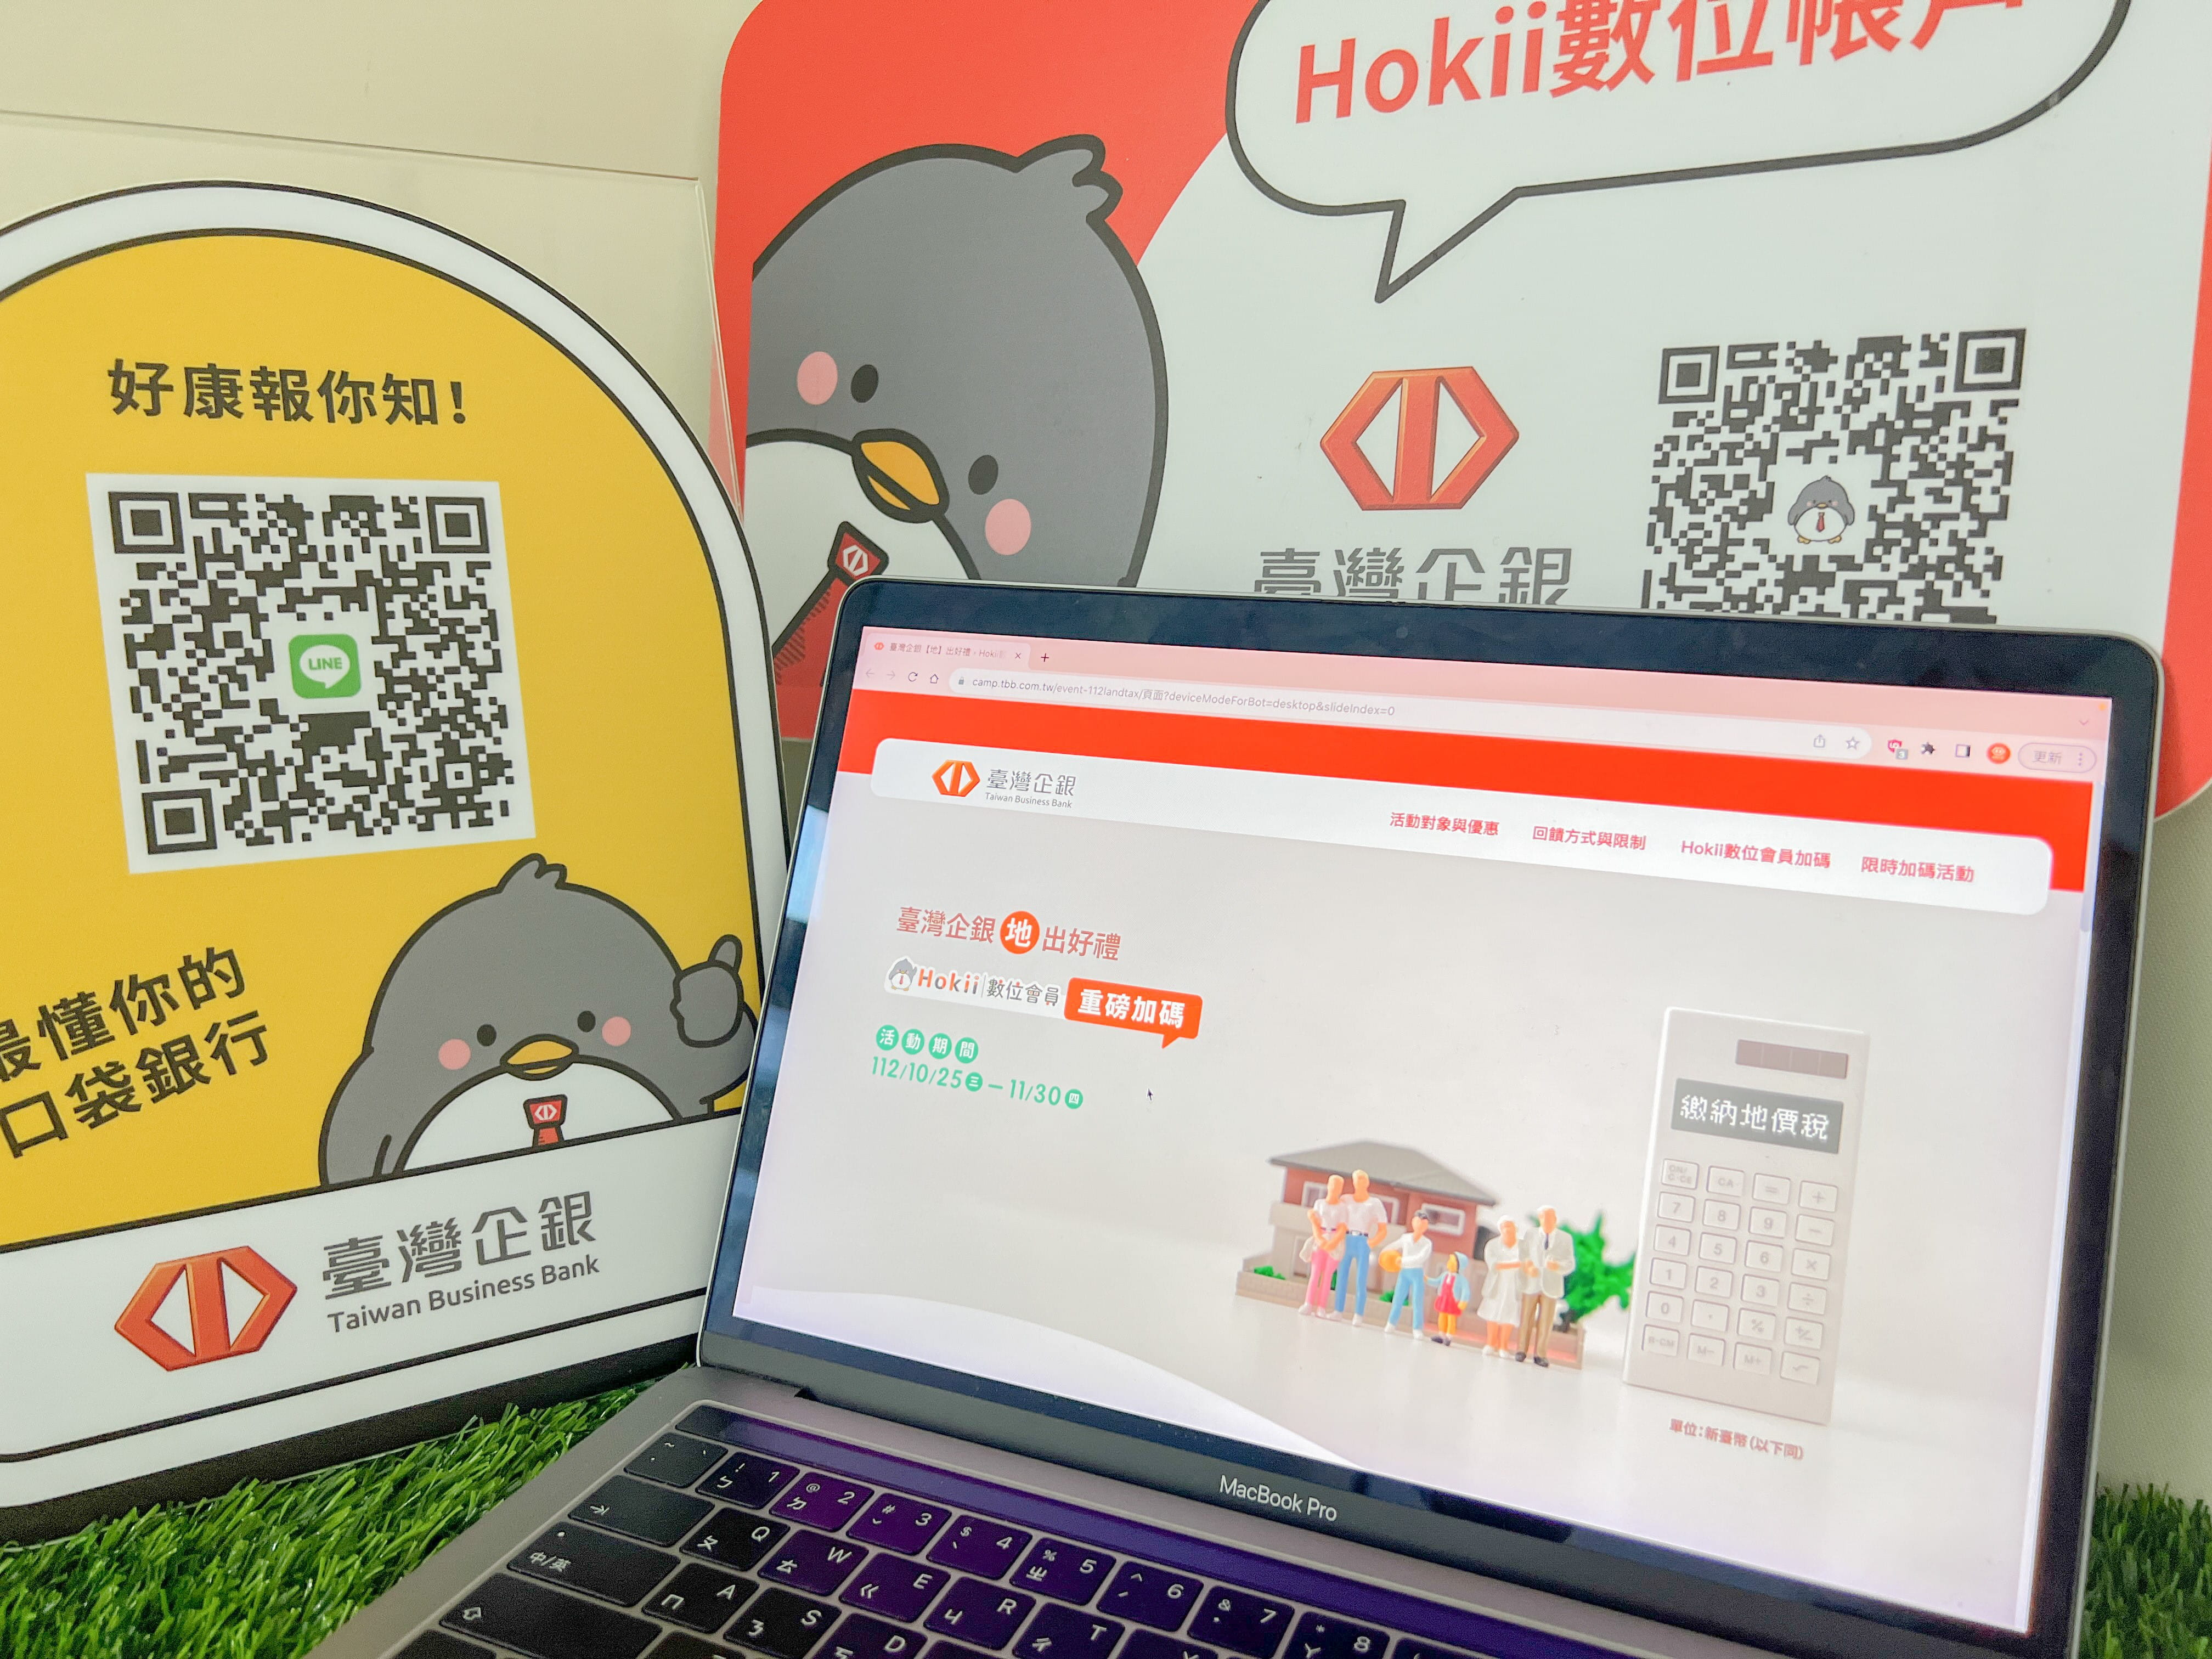 臺灣企銀Hokii數位會員台灣Pay繳地價稅最高回饋3,500點